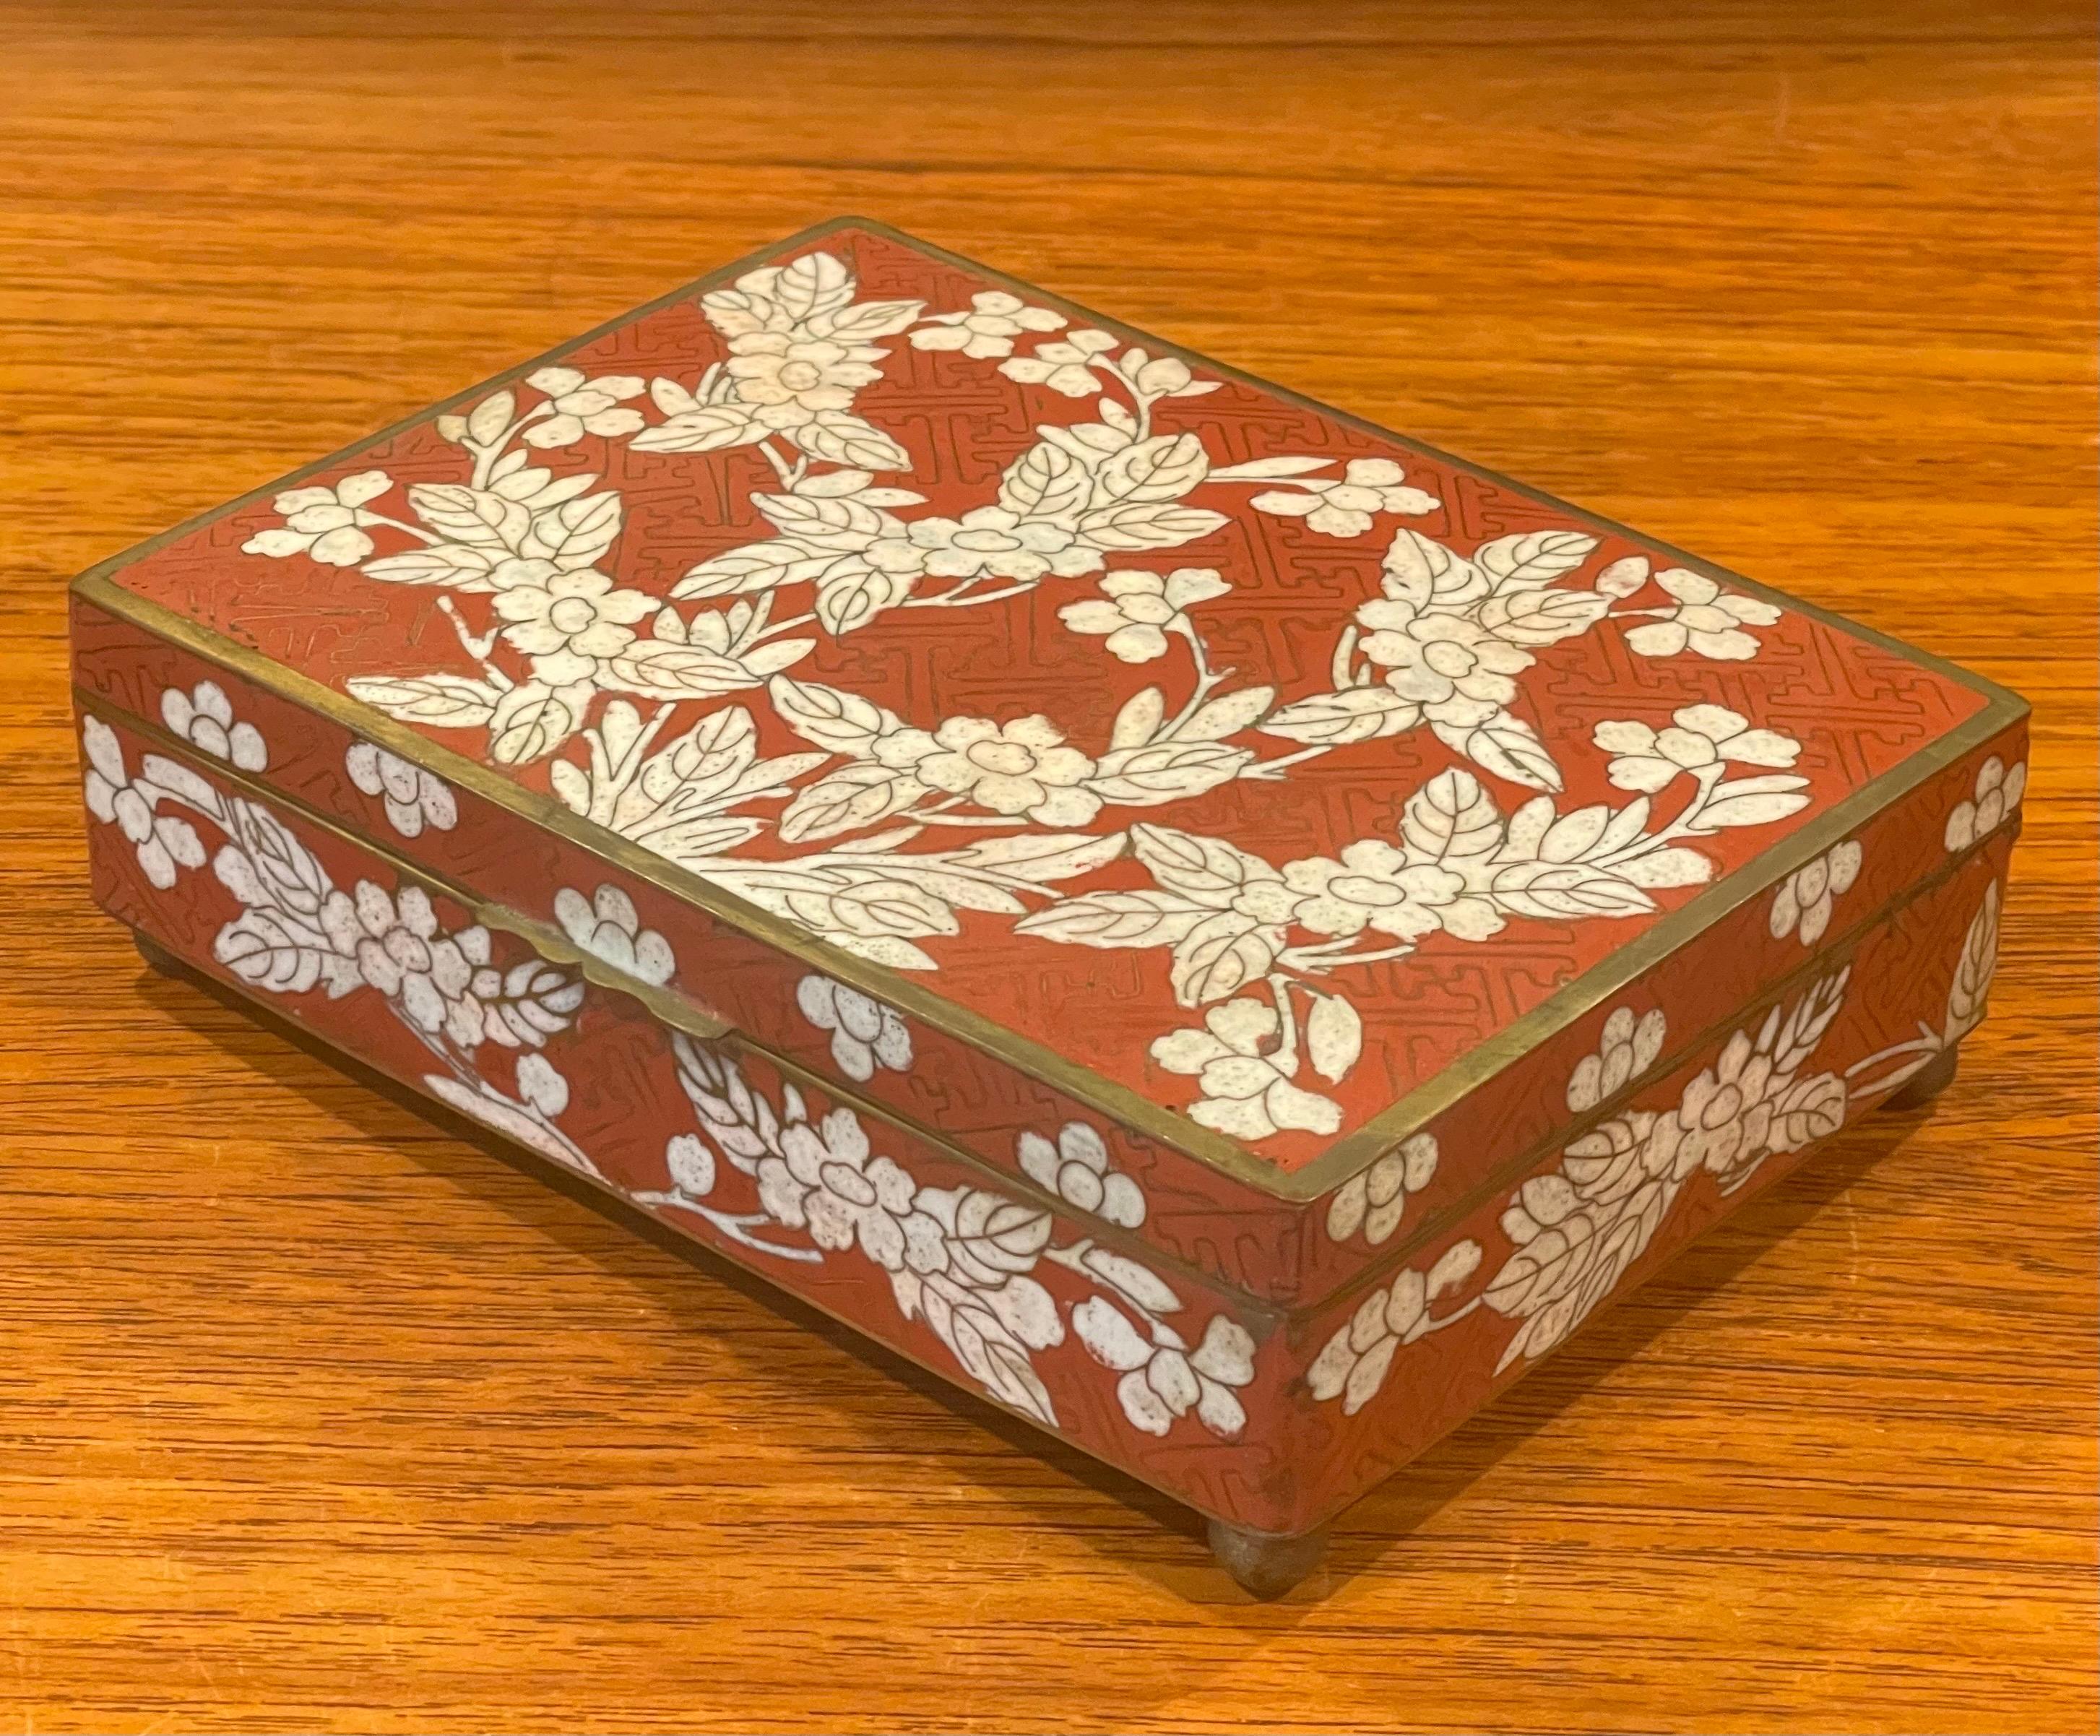 Cloissoné Japanese Cloisonne Lidded Trinket Box with Bun Feet